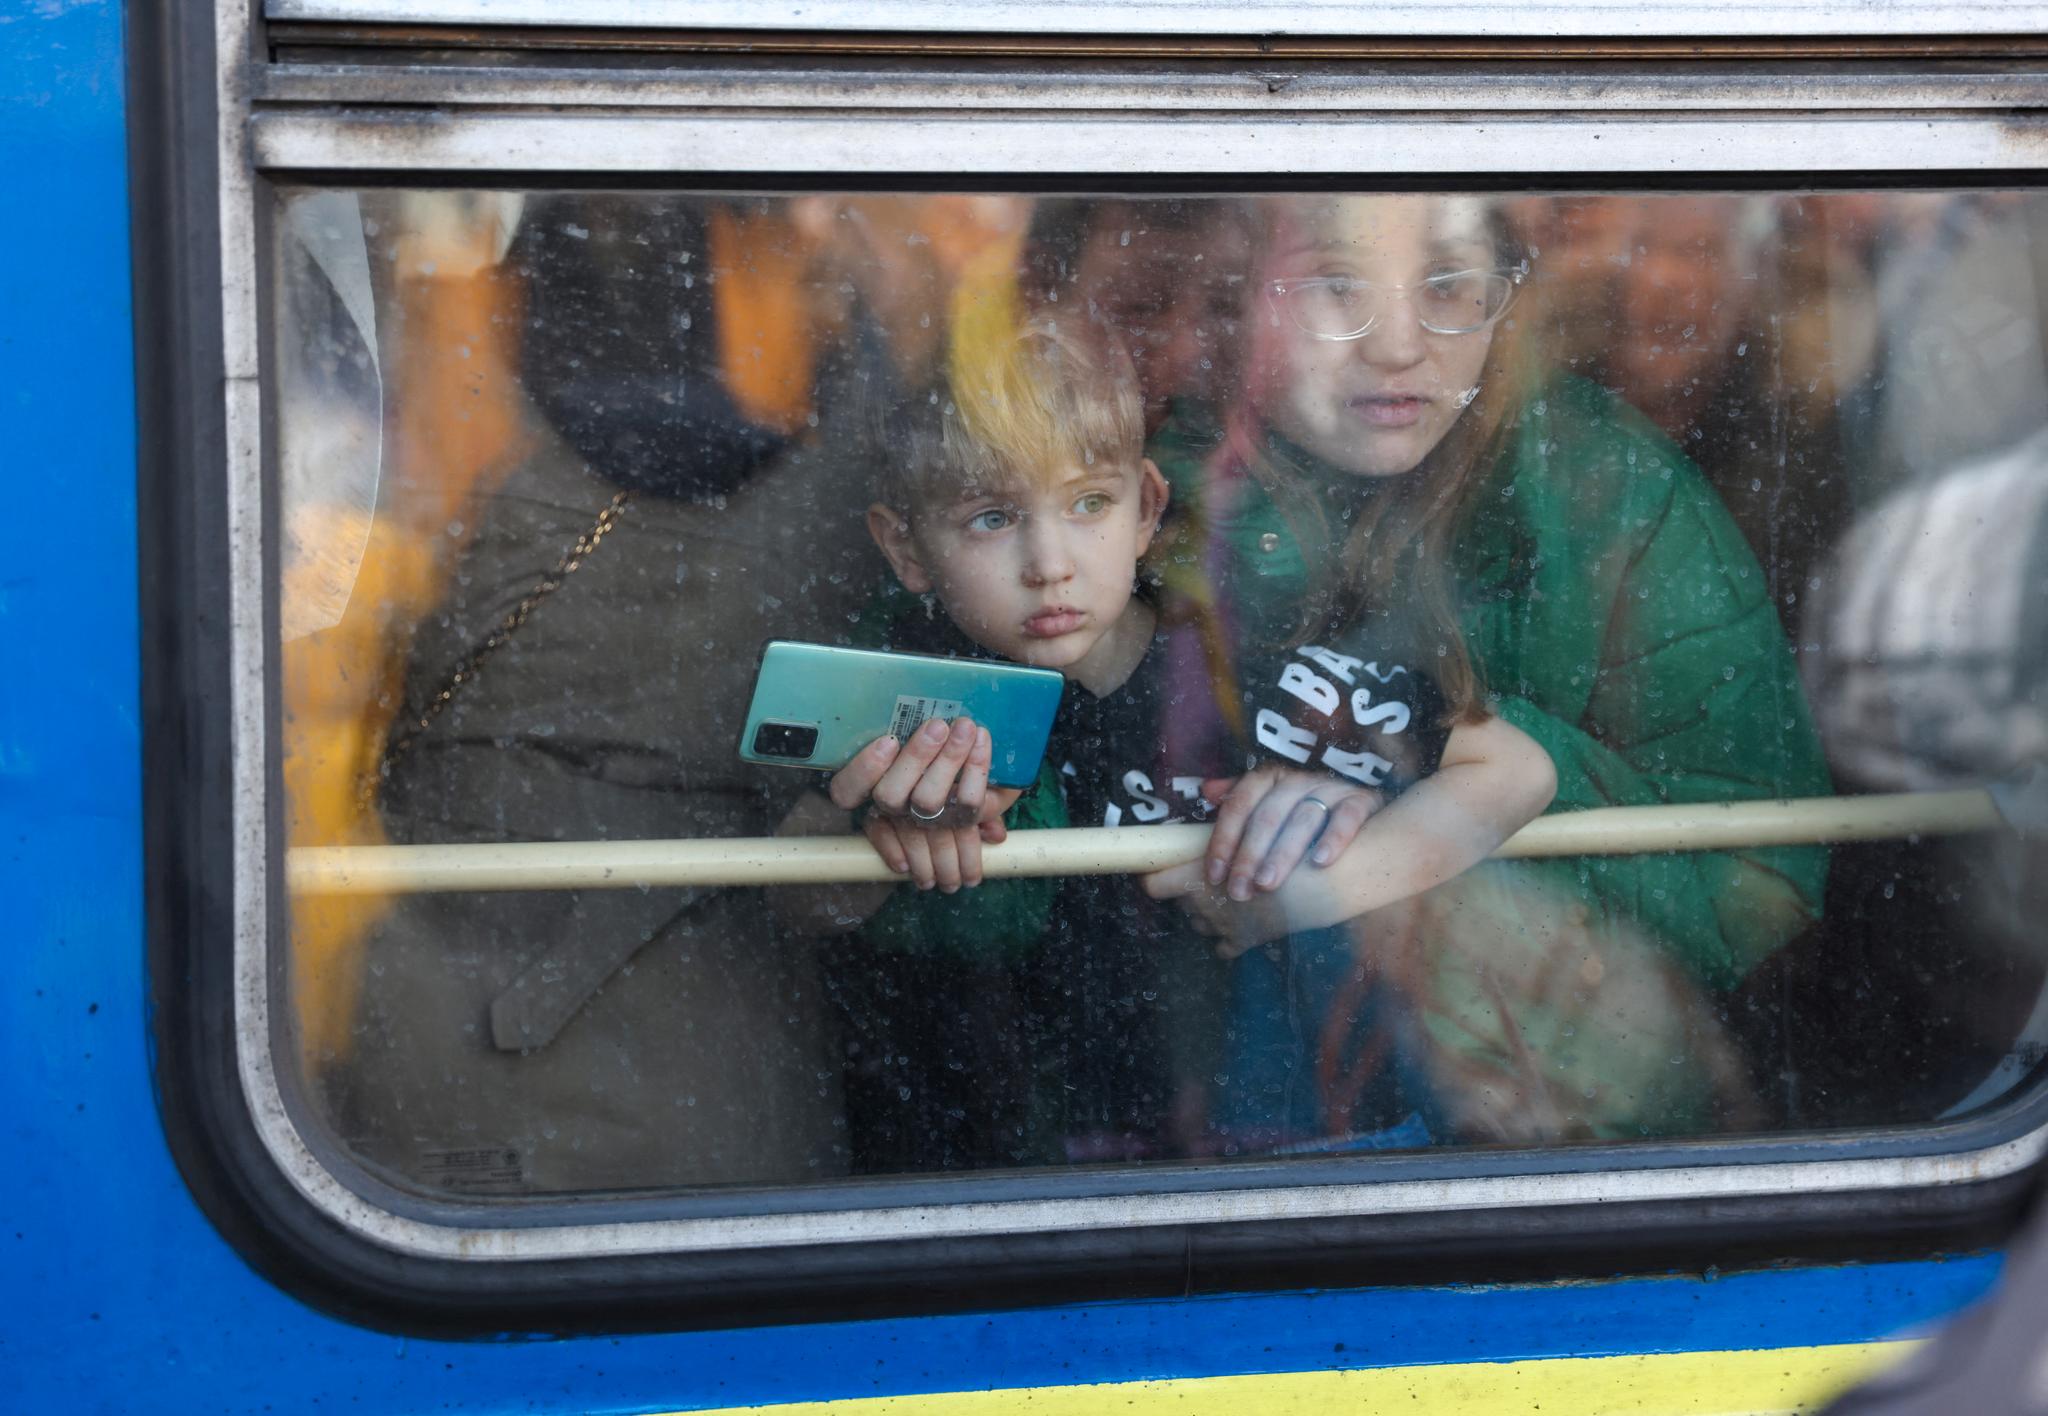 Dette er den tredje masseflukten i Europa i løpet av de siste 30 årene. Forskere i Norge og Norden har fulgt flyktningsituasjonene nøye, skriver Jan-Paul Brekke. På bildet: Ukrainere flykter fra Kyiv, fredag 25. februar.